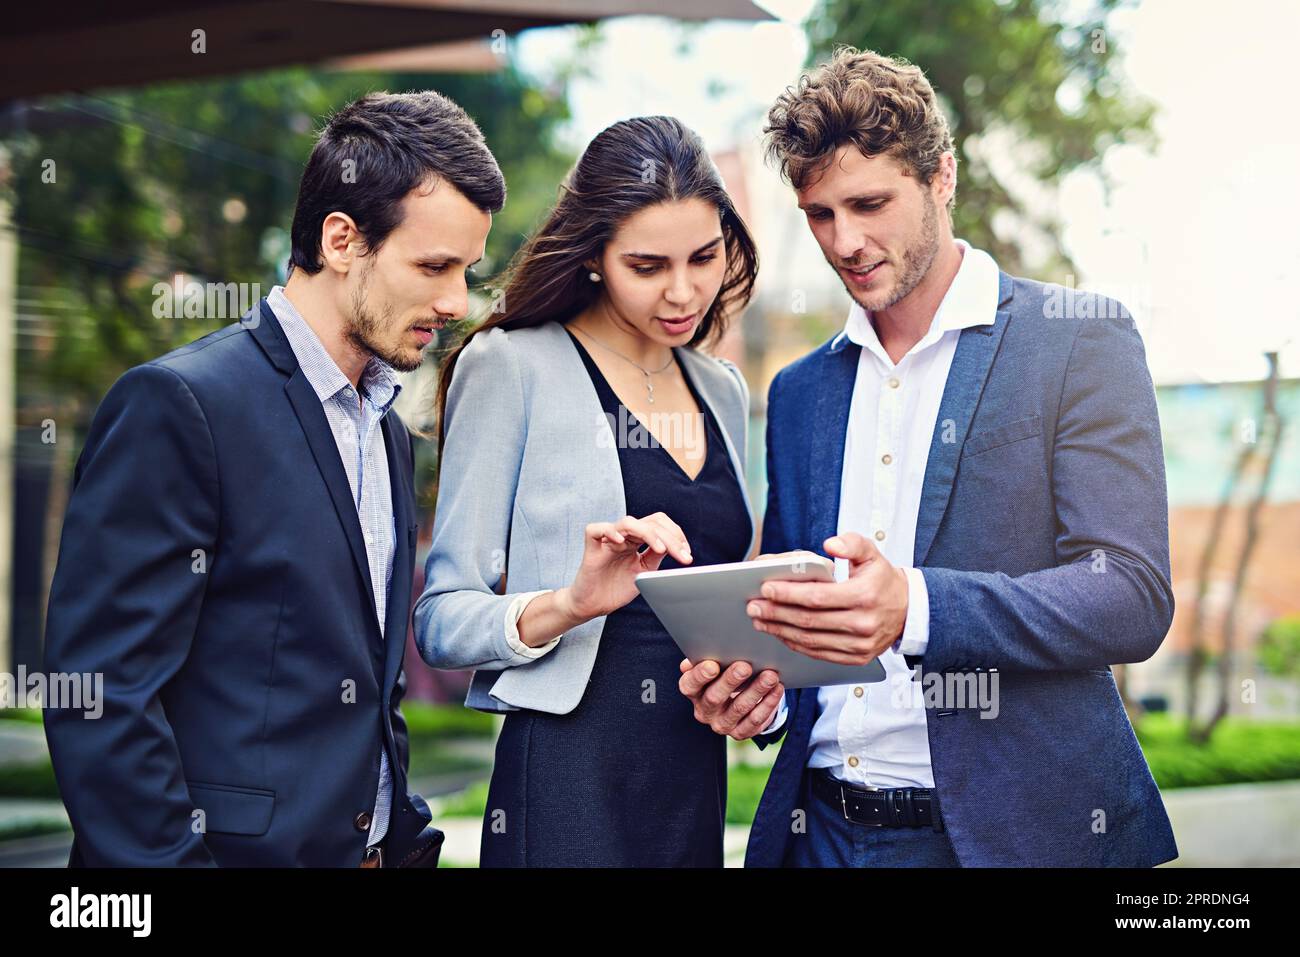 Sie arbeiten zusammen, um den Standort zu finden. Geschäftsleute benutzen draußen ein Tablet. Stockfoto